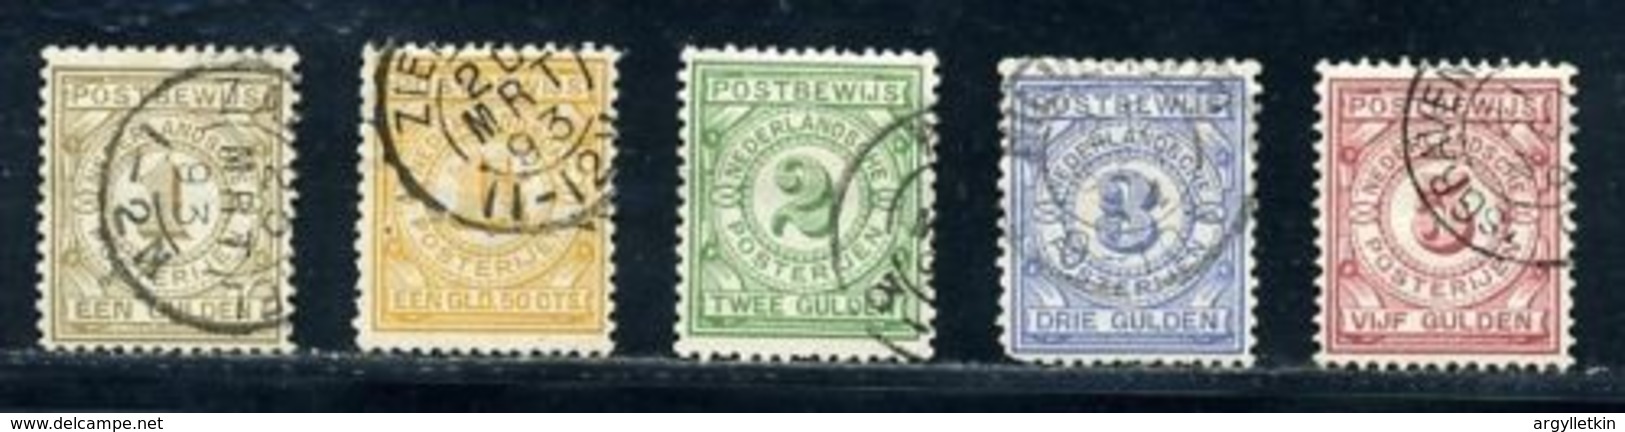 NETHERLANDS 1884 MONEY ORDER STAMPS - Revenue Stamps